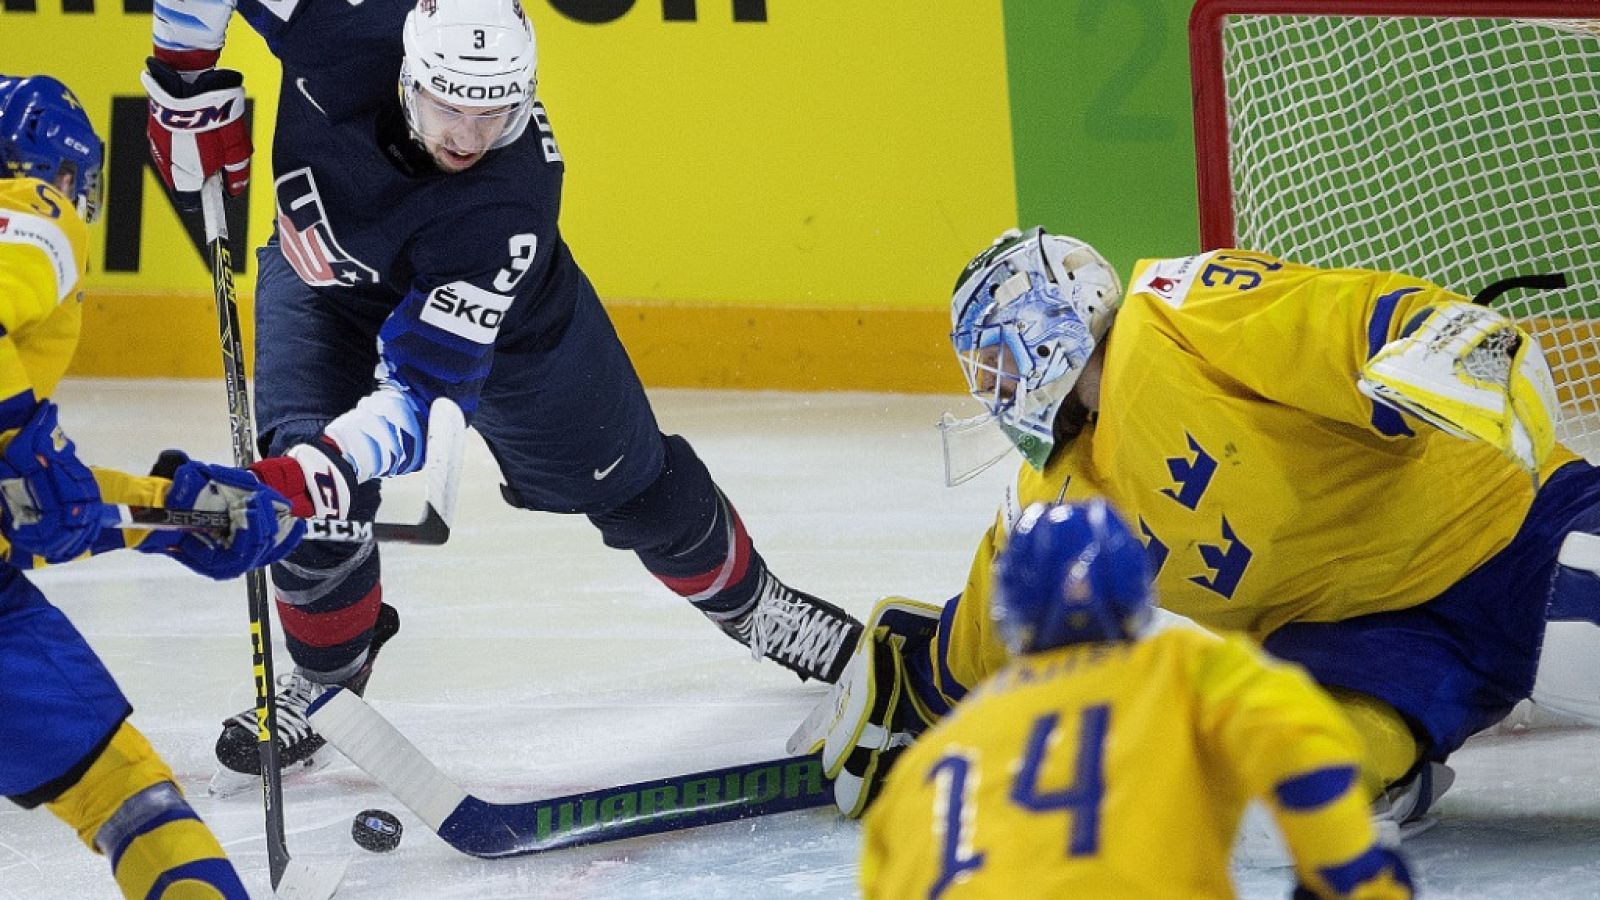 Hockey Hielo - Campeonato del Mundo. 1ª Semifinal: Suecia - Estados Unidos